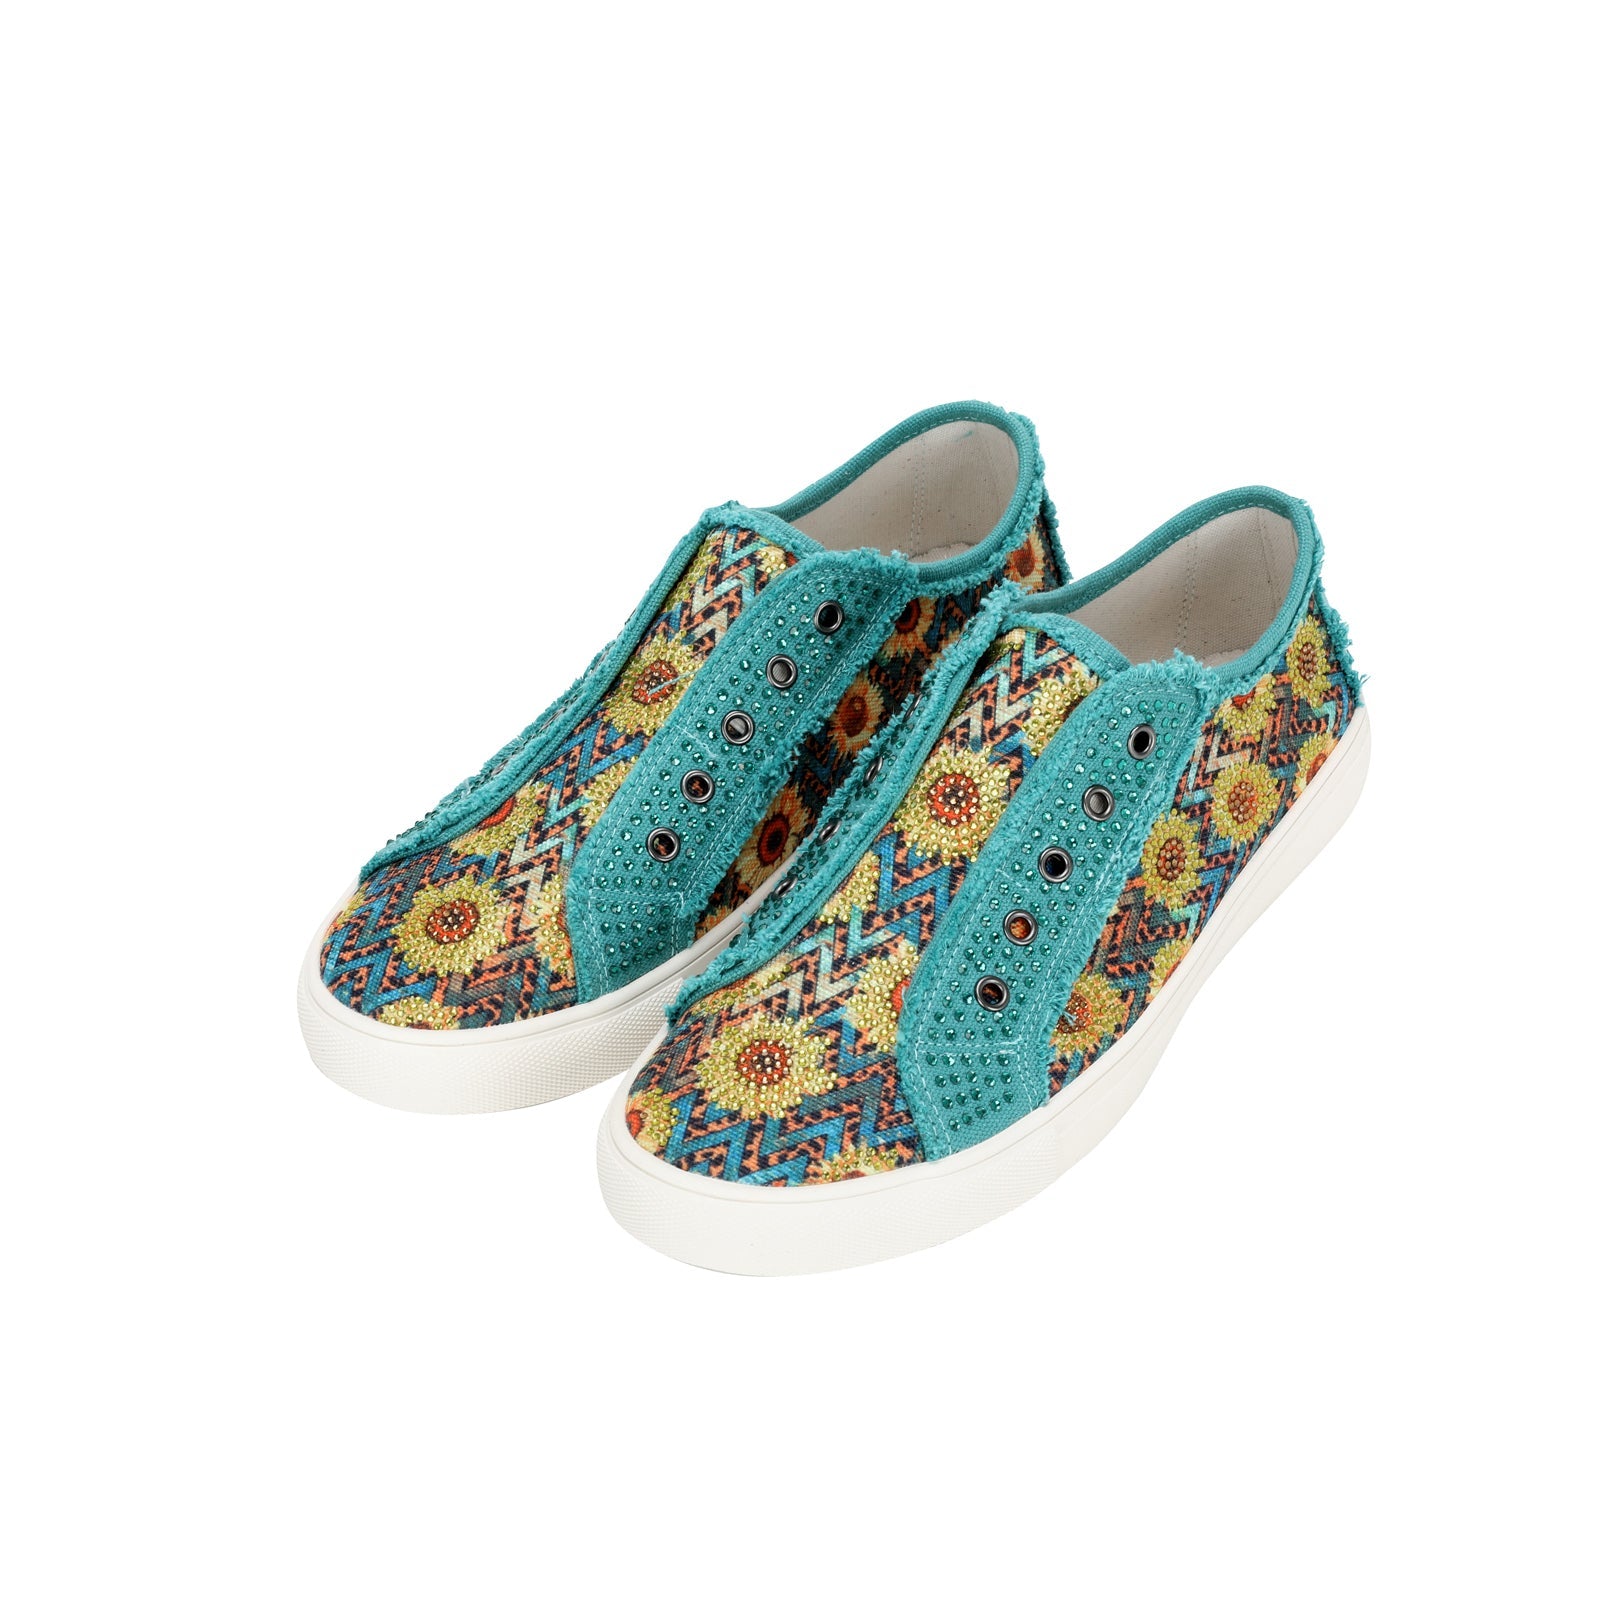 Bling Shoe Laces - 7 Colors - FINAL SALE – Paisley Grace Boutique